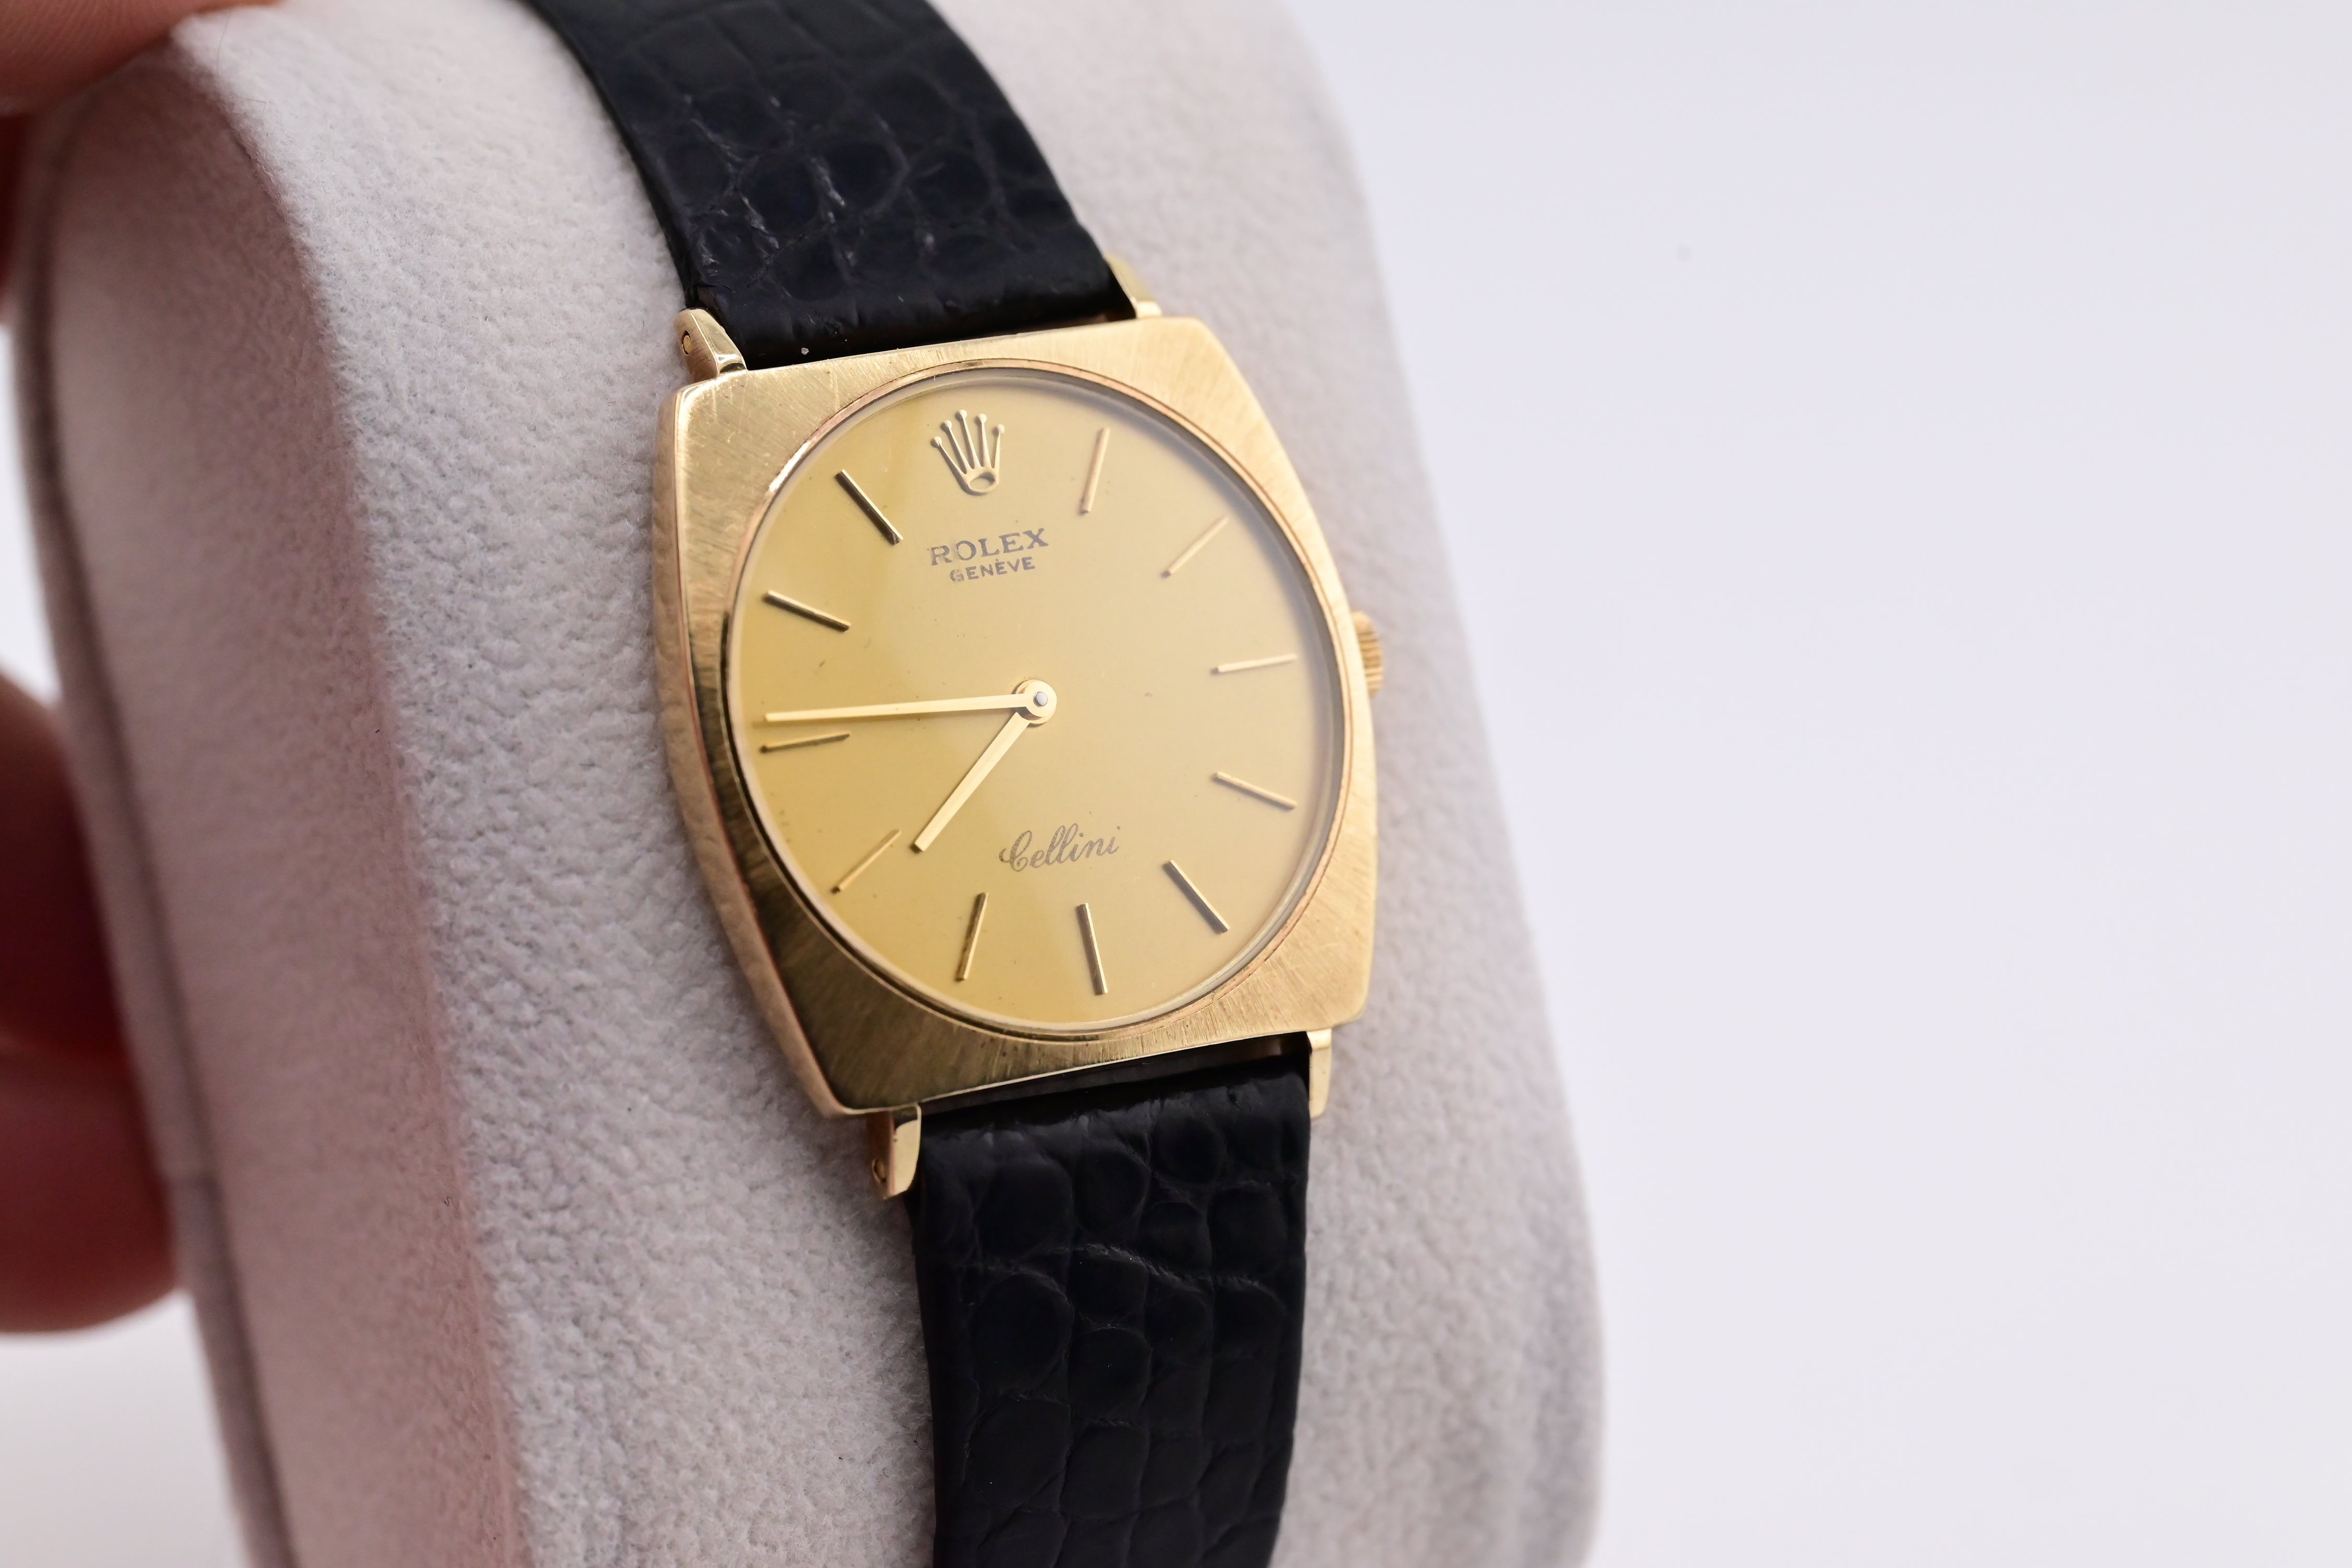 Rolex Cellini Ref. 3802 18K White Gold Case Watch | eBay